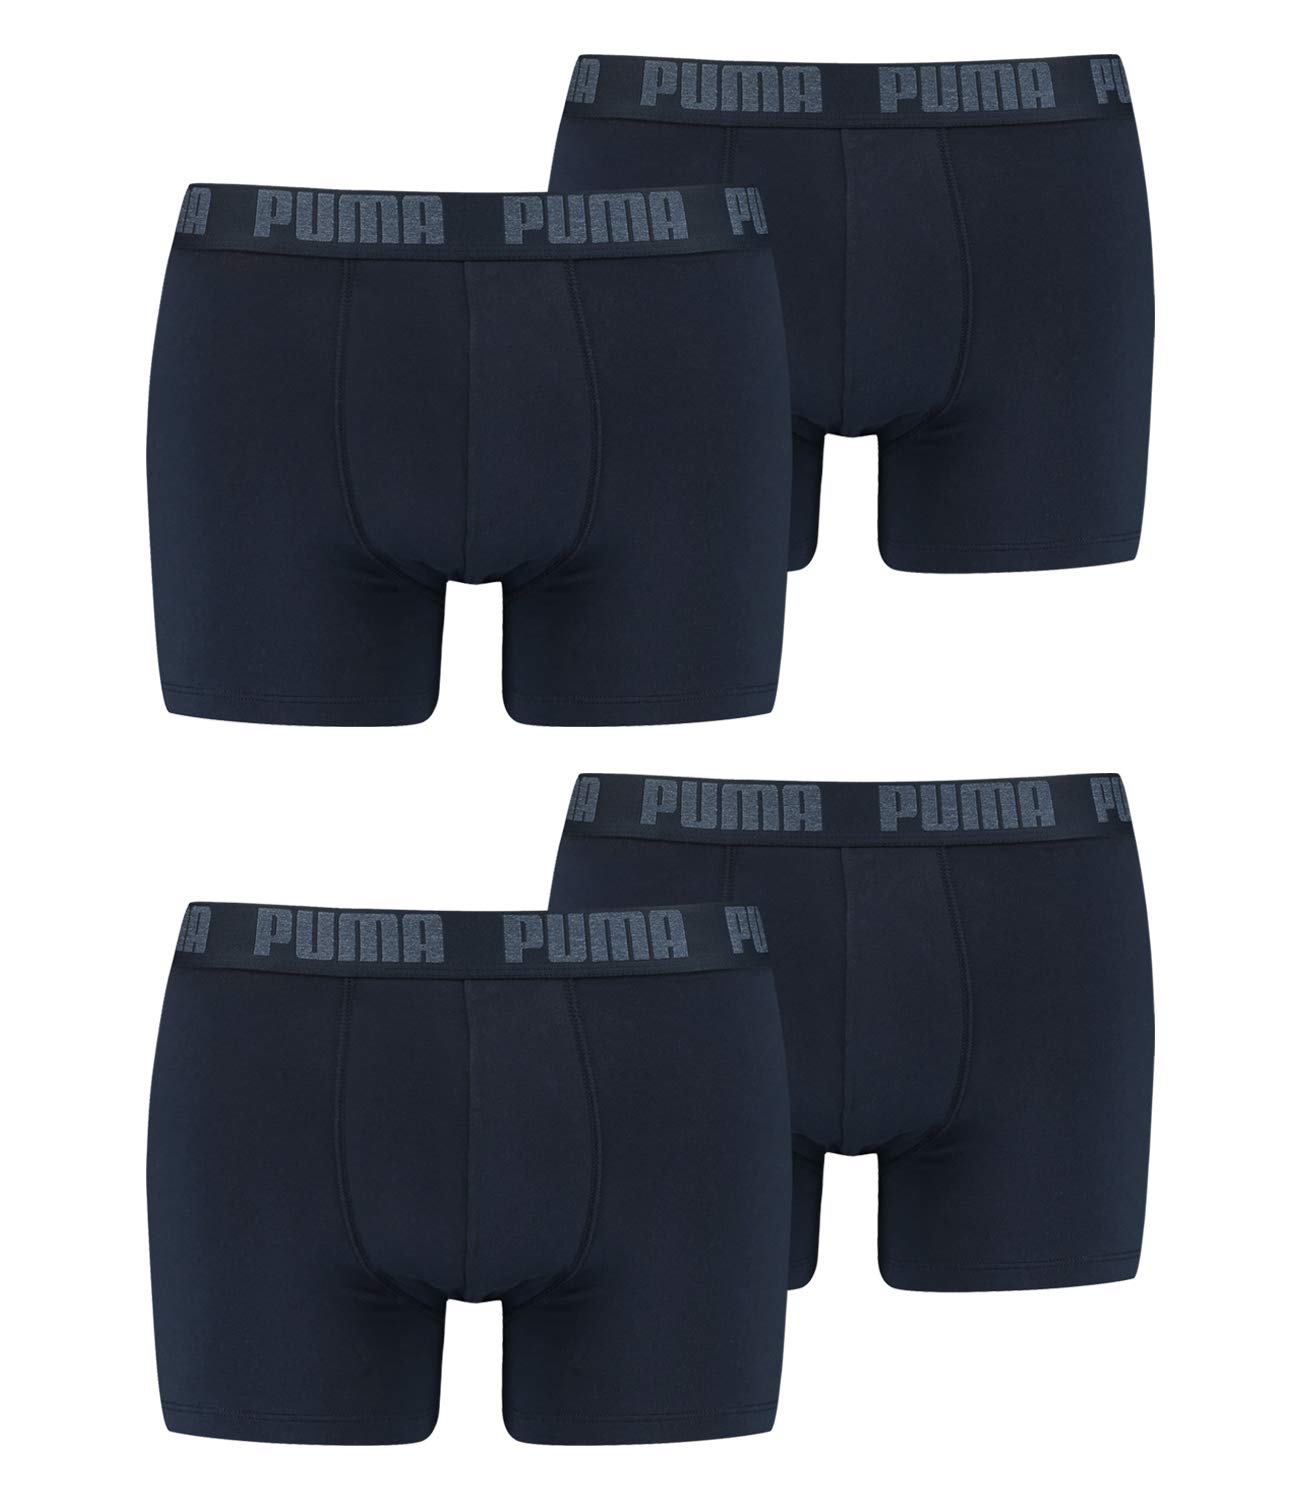 PUMA 4 er Pack Boxer Boxershorts Men Herren Unterhose Pant Unterwäsche Navy, Farbe:321 - Navy, Bekleidungsgröße:M